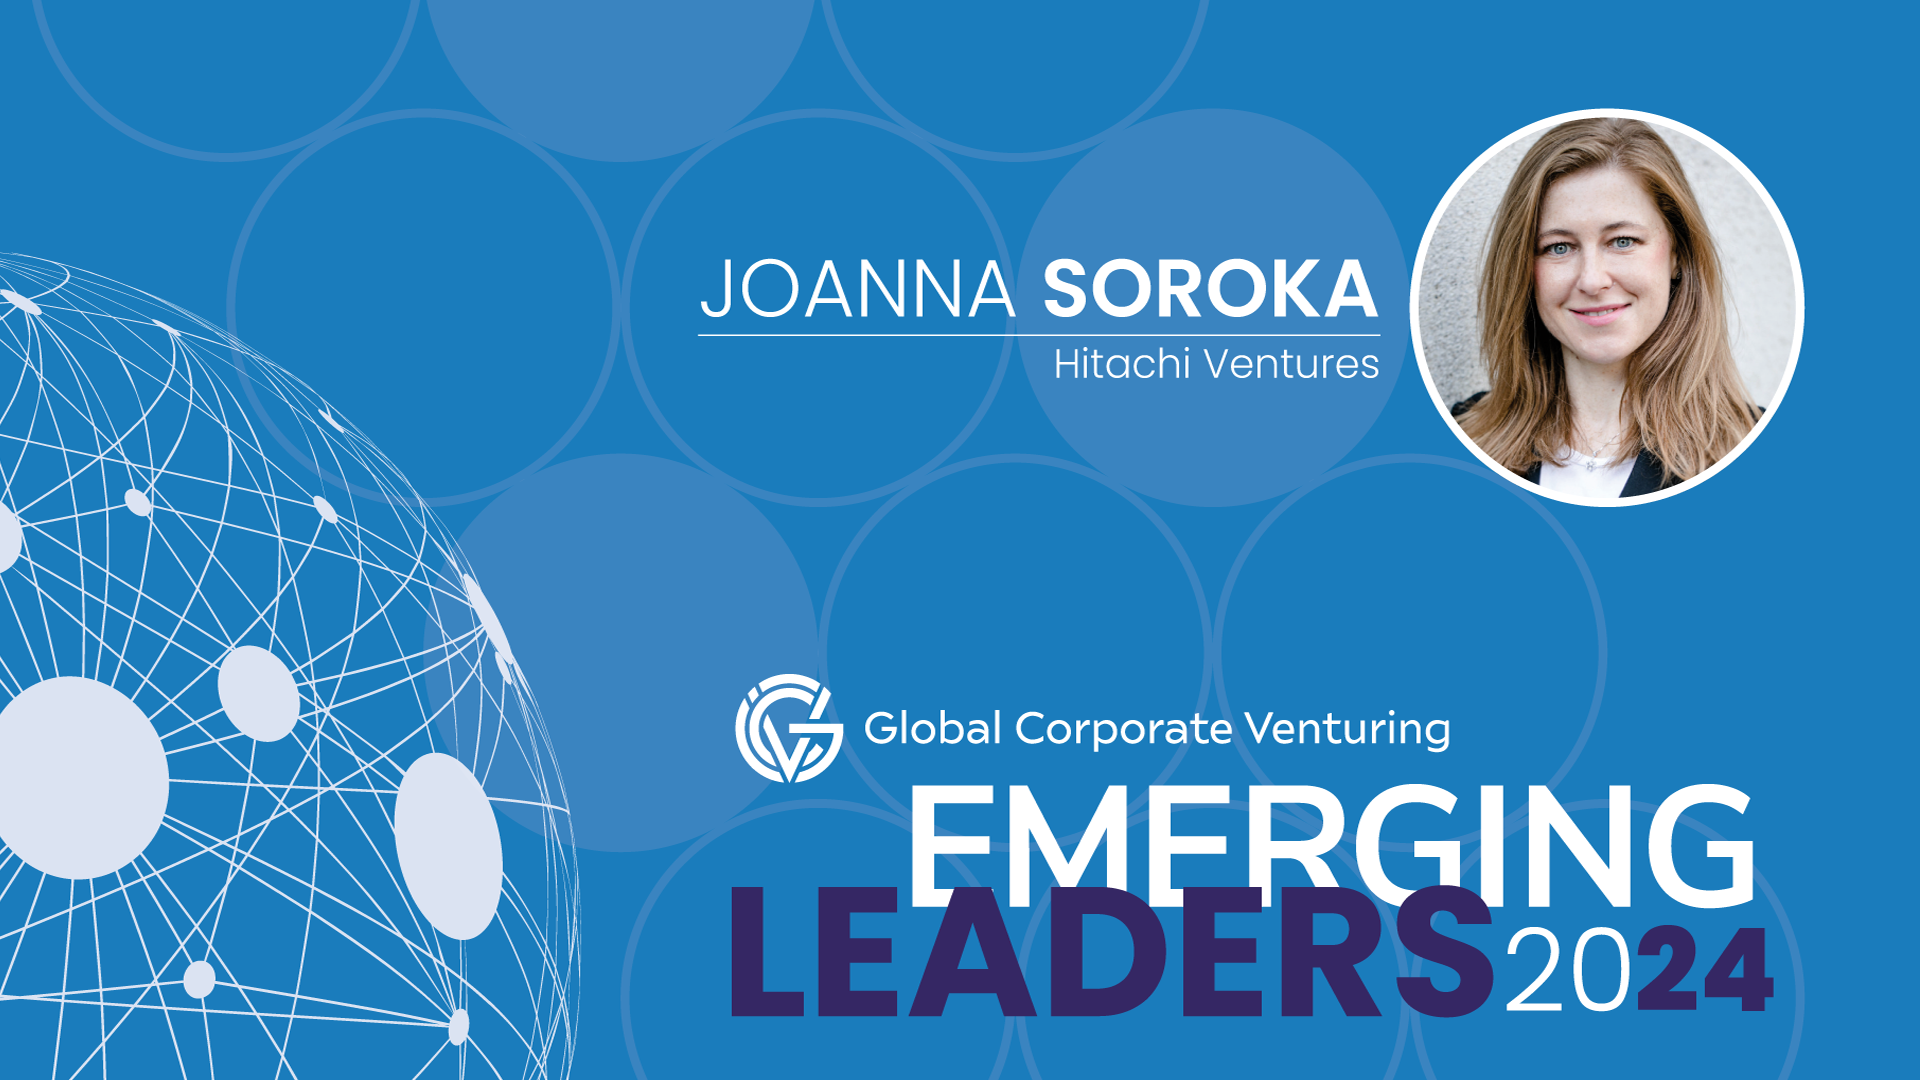 Joanna Soroka, Hitachi Ventures